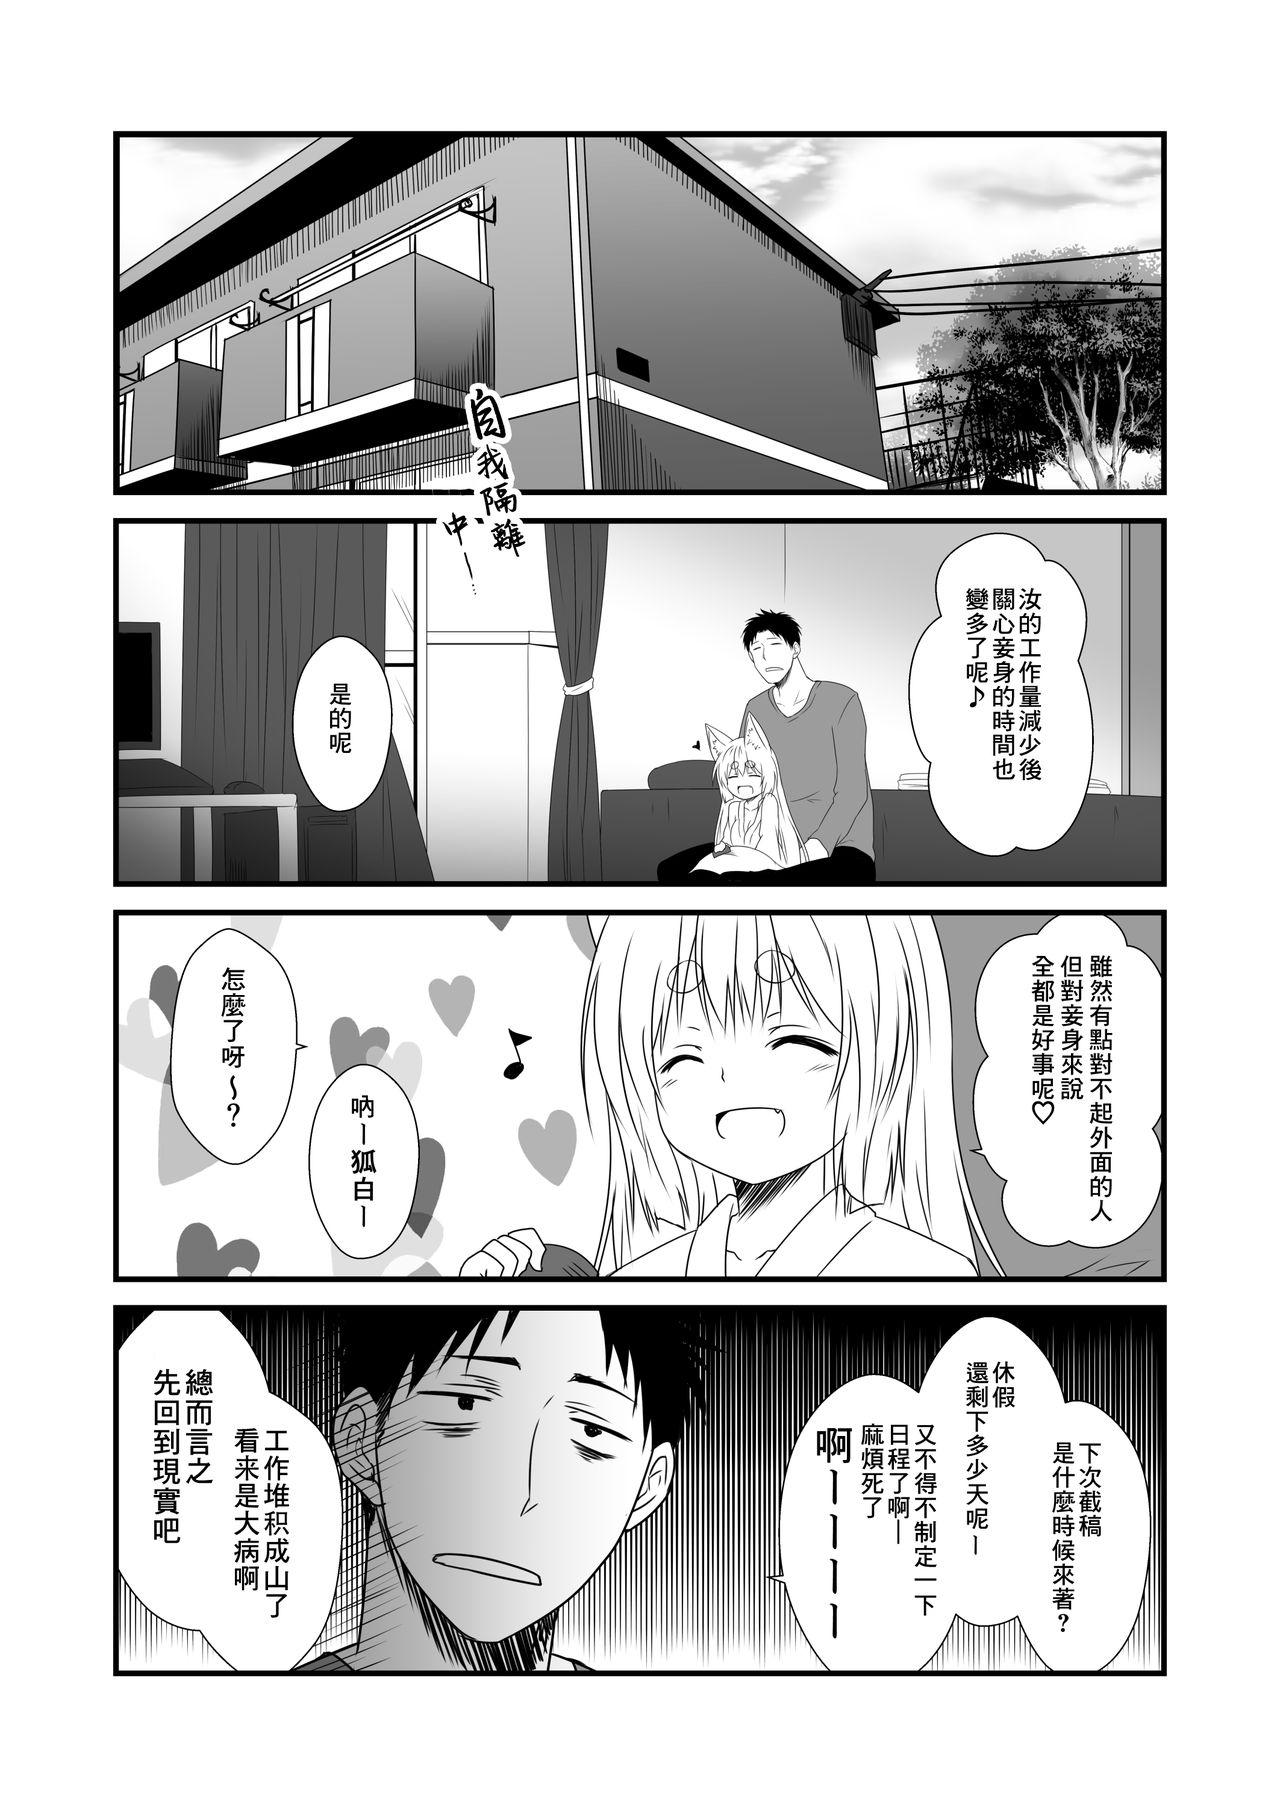 Bus Kohaku Biyori Vol. 6 - Original Culo - Page 6